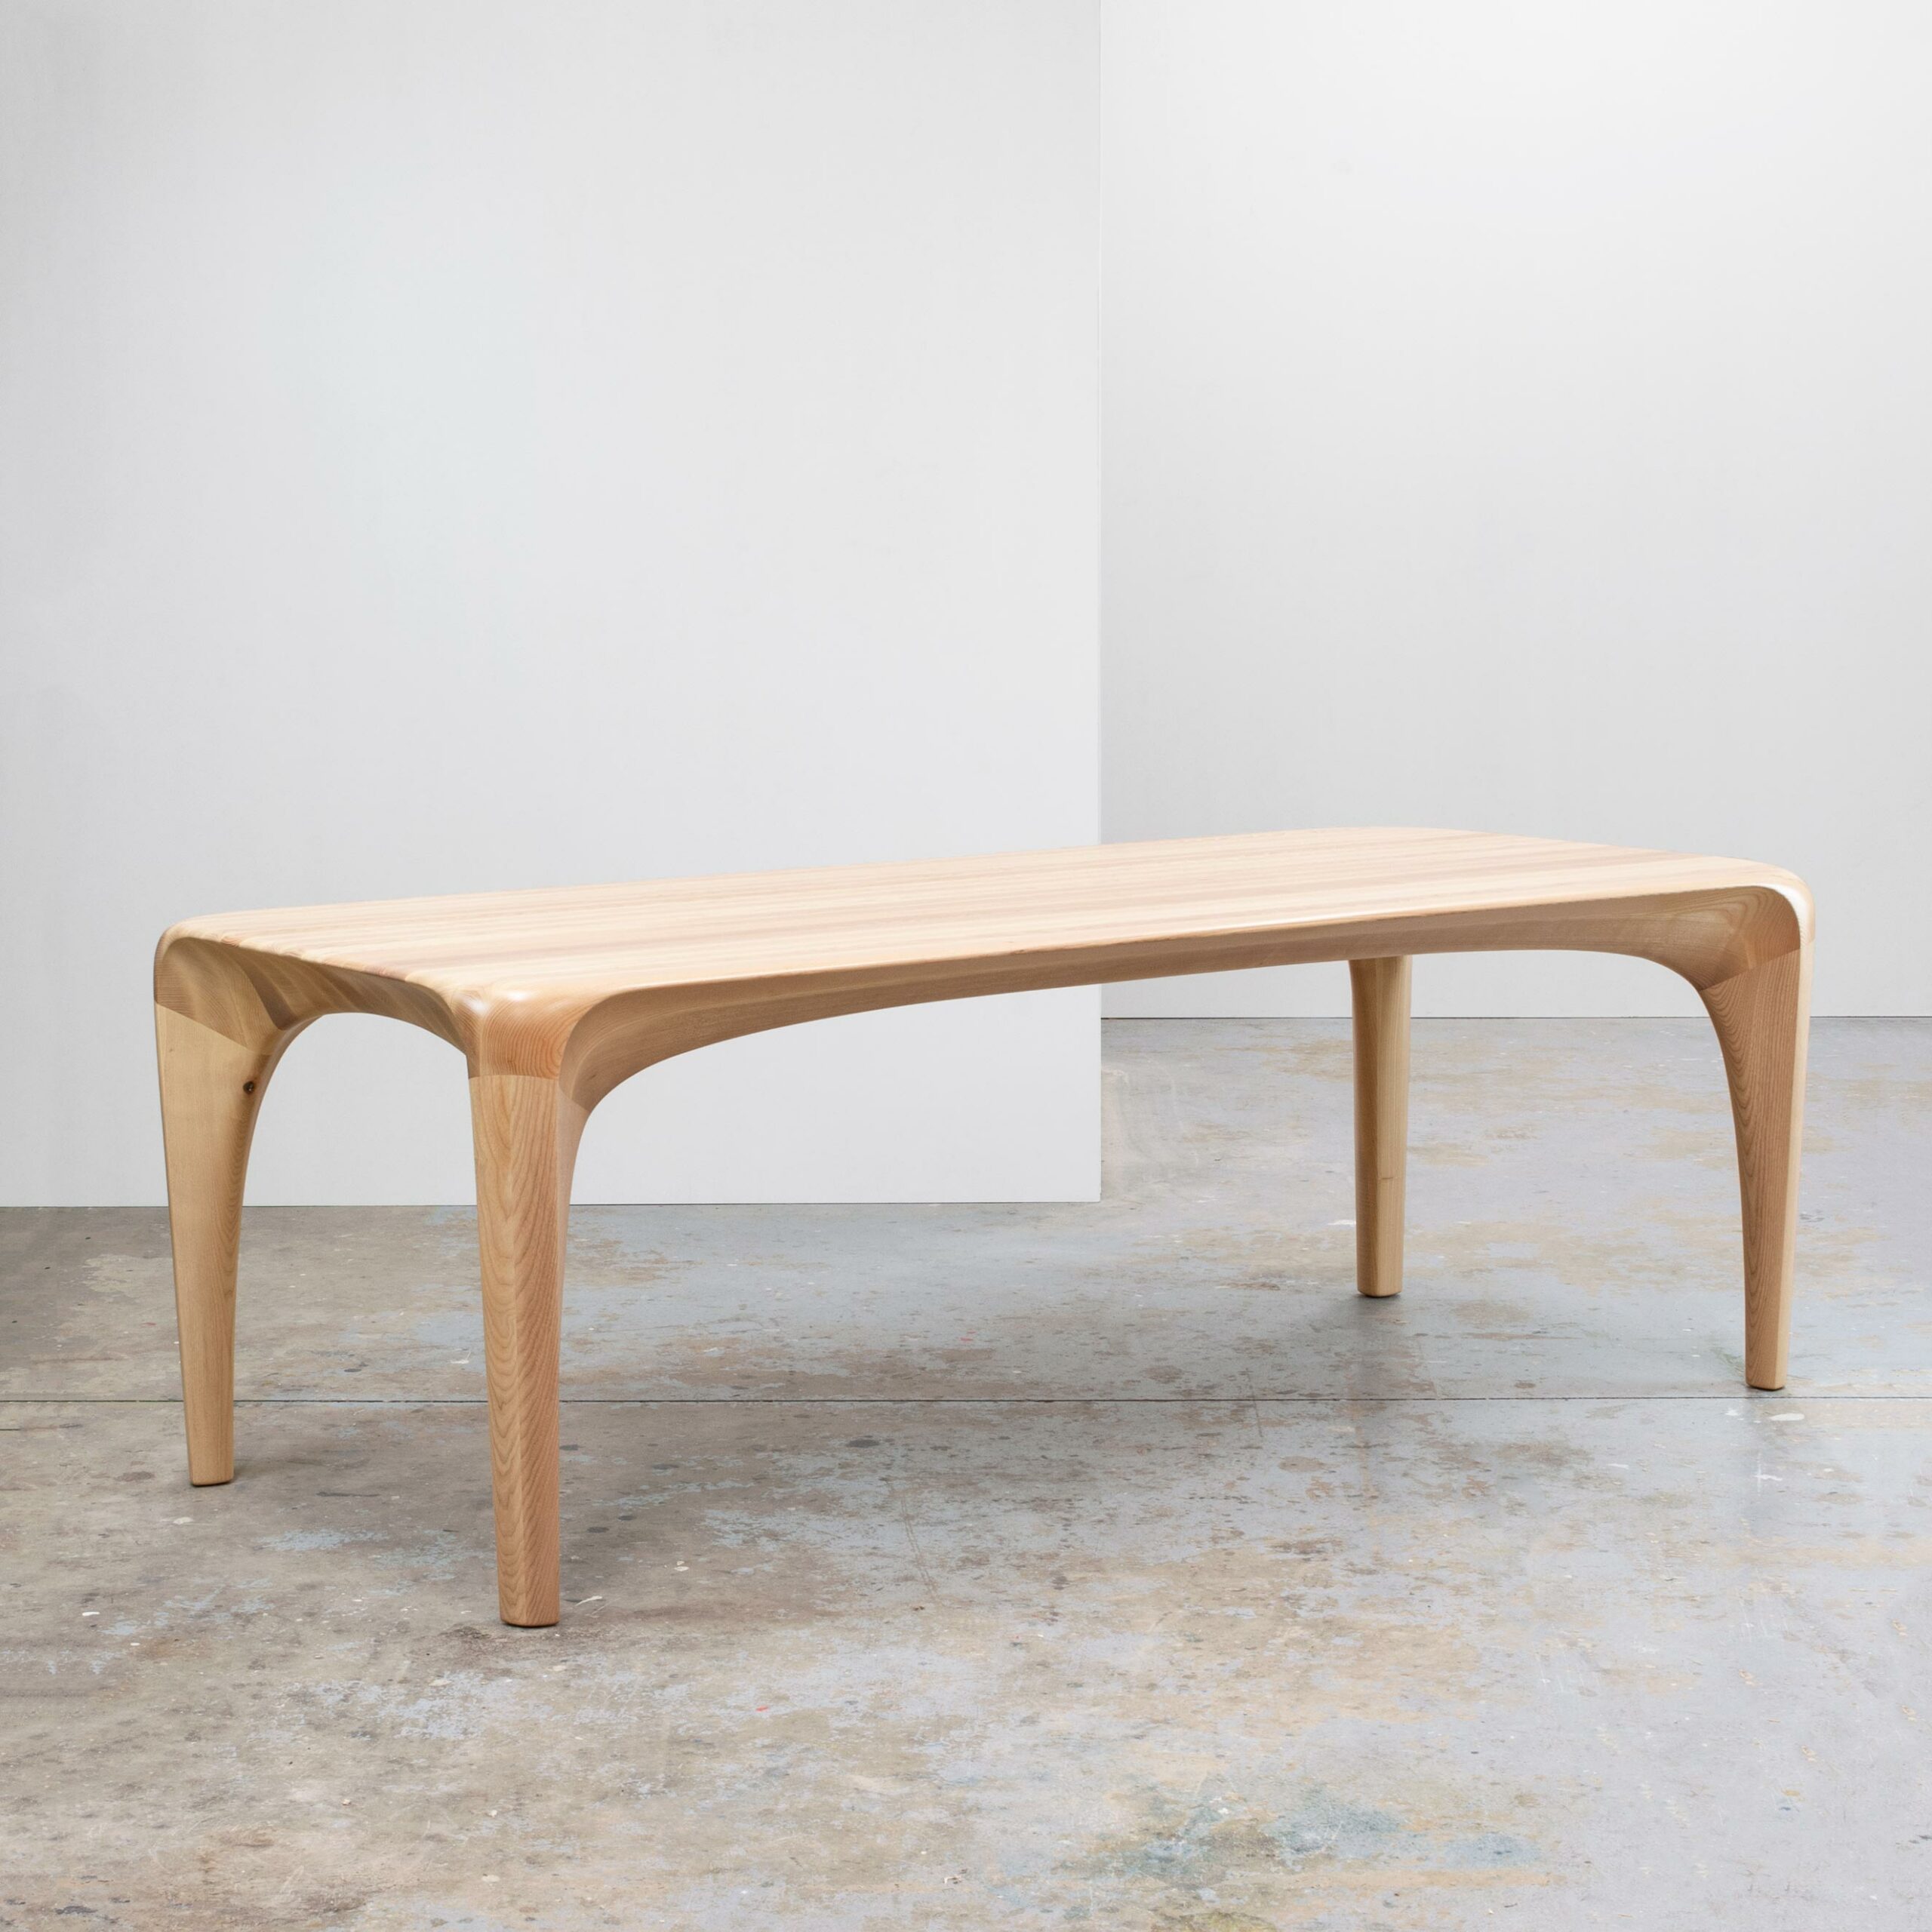 Table - Table à manger - Maxime Goléo - bois - frêne - organique - épuré - moderne - sculpture - design intérieur - galerie d'art - design